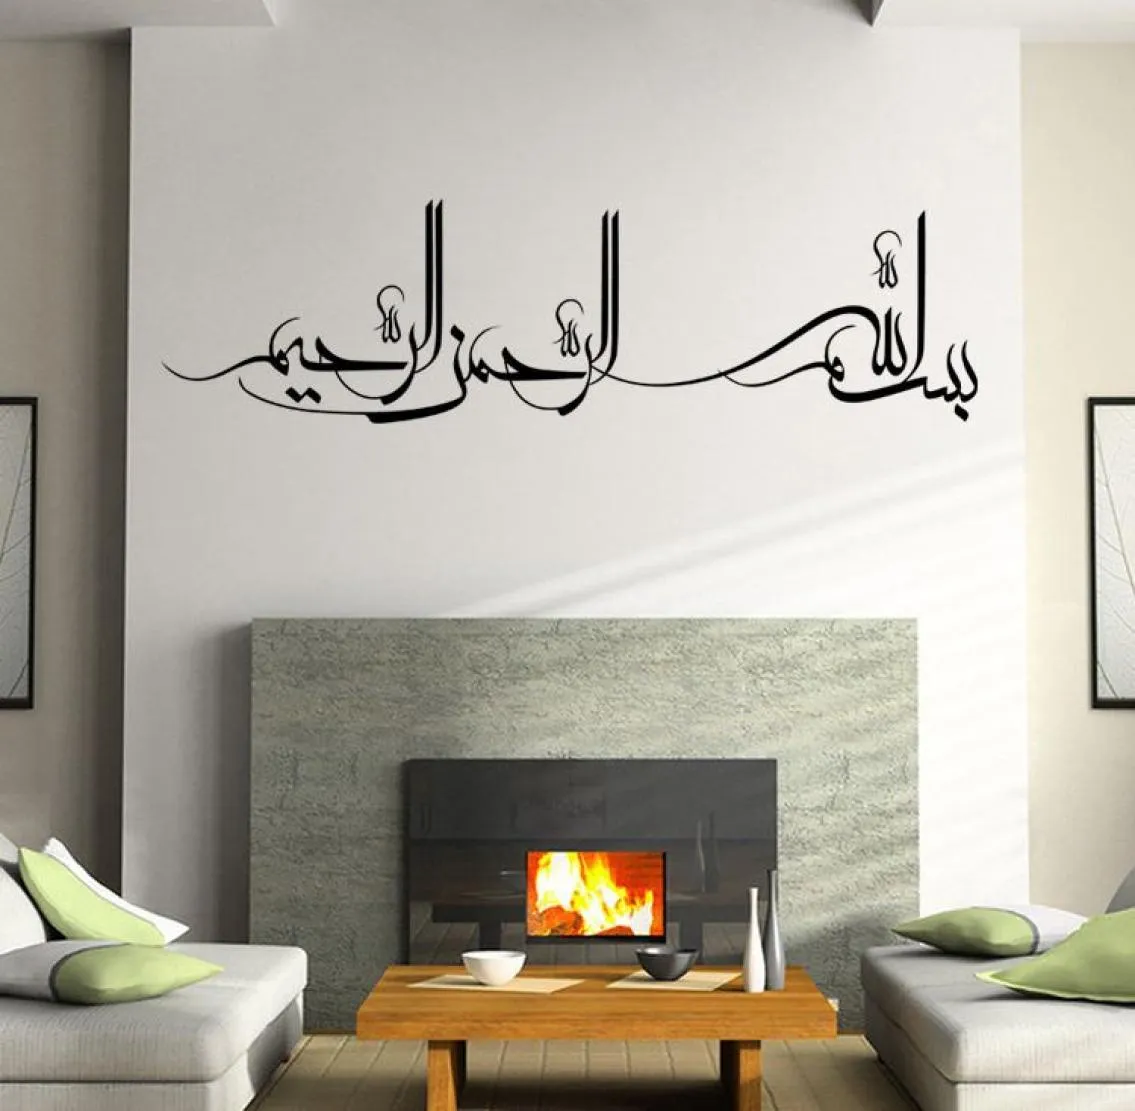 Nouveaux autocollants muraux en vinyle de transfert musulman islamique, décalcomanie murale d'art pour la maison, applique murale créative, affiche, papier peint graphique, décor 8973707